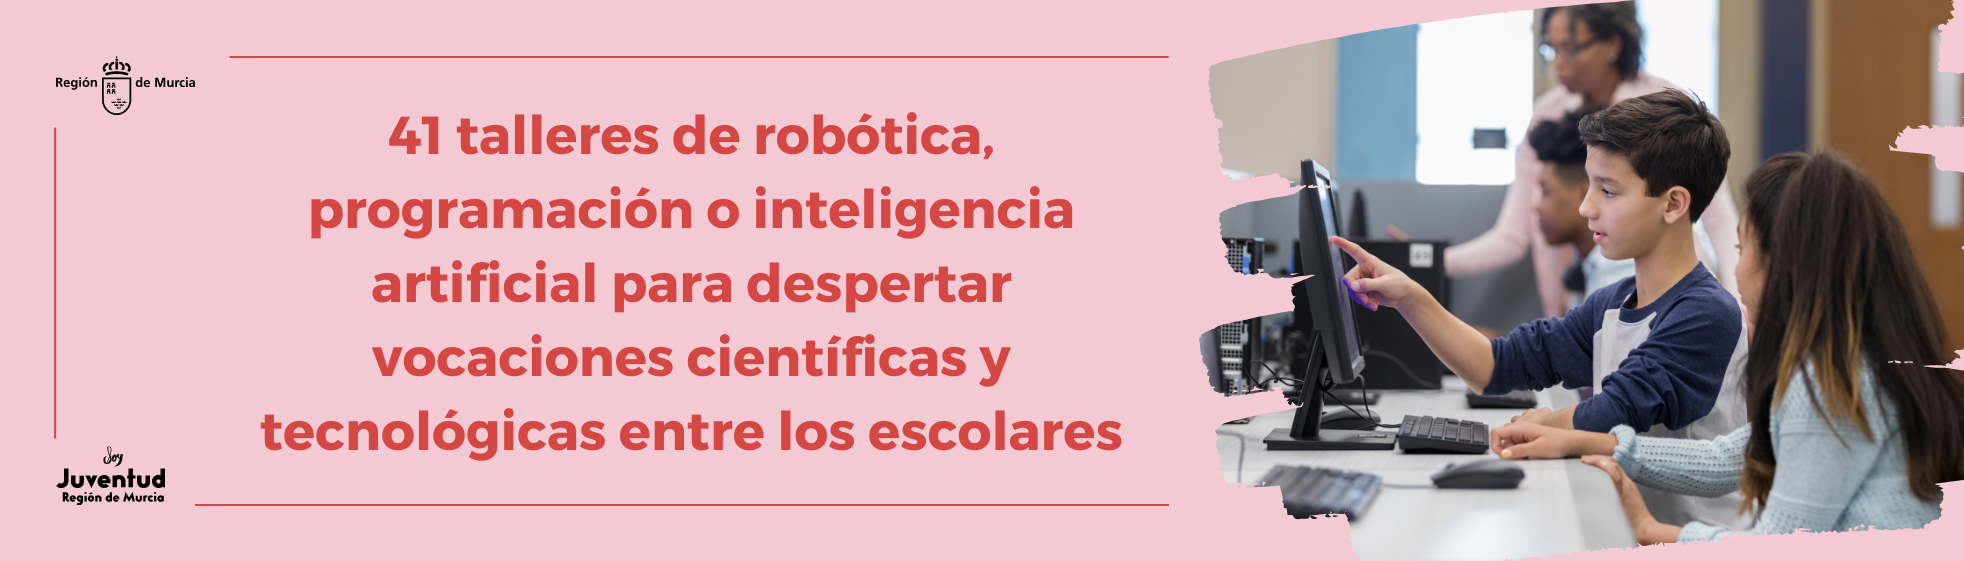 41 talleres de robótica, programación o inteligencia artificial para despertar vocaciones científicas y tecnológicas entre los escolares